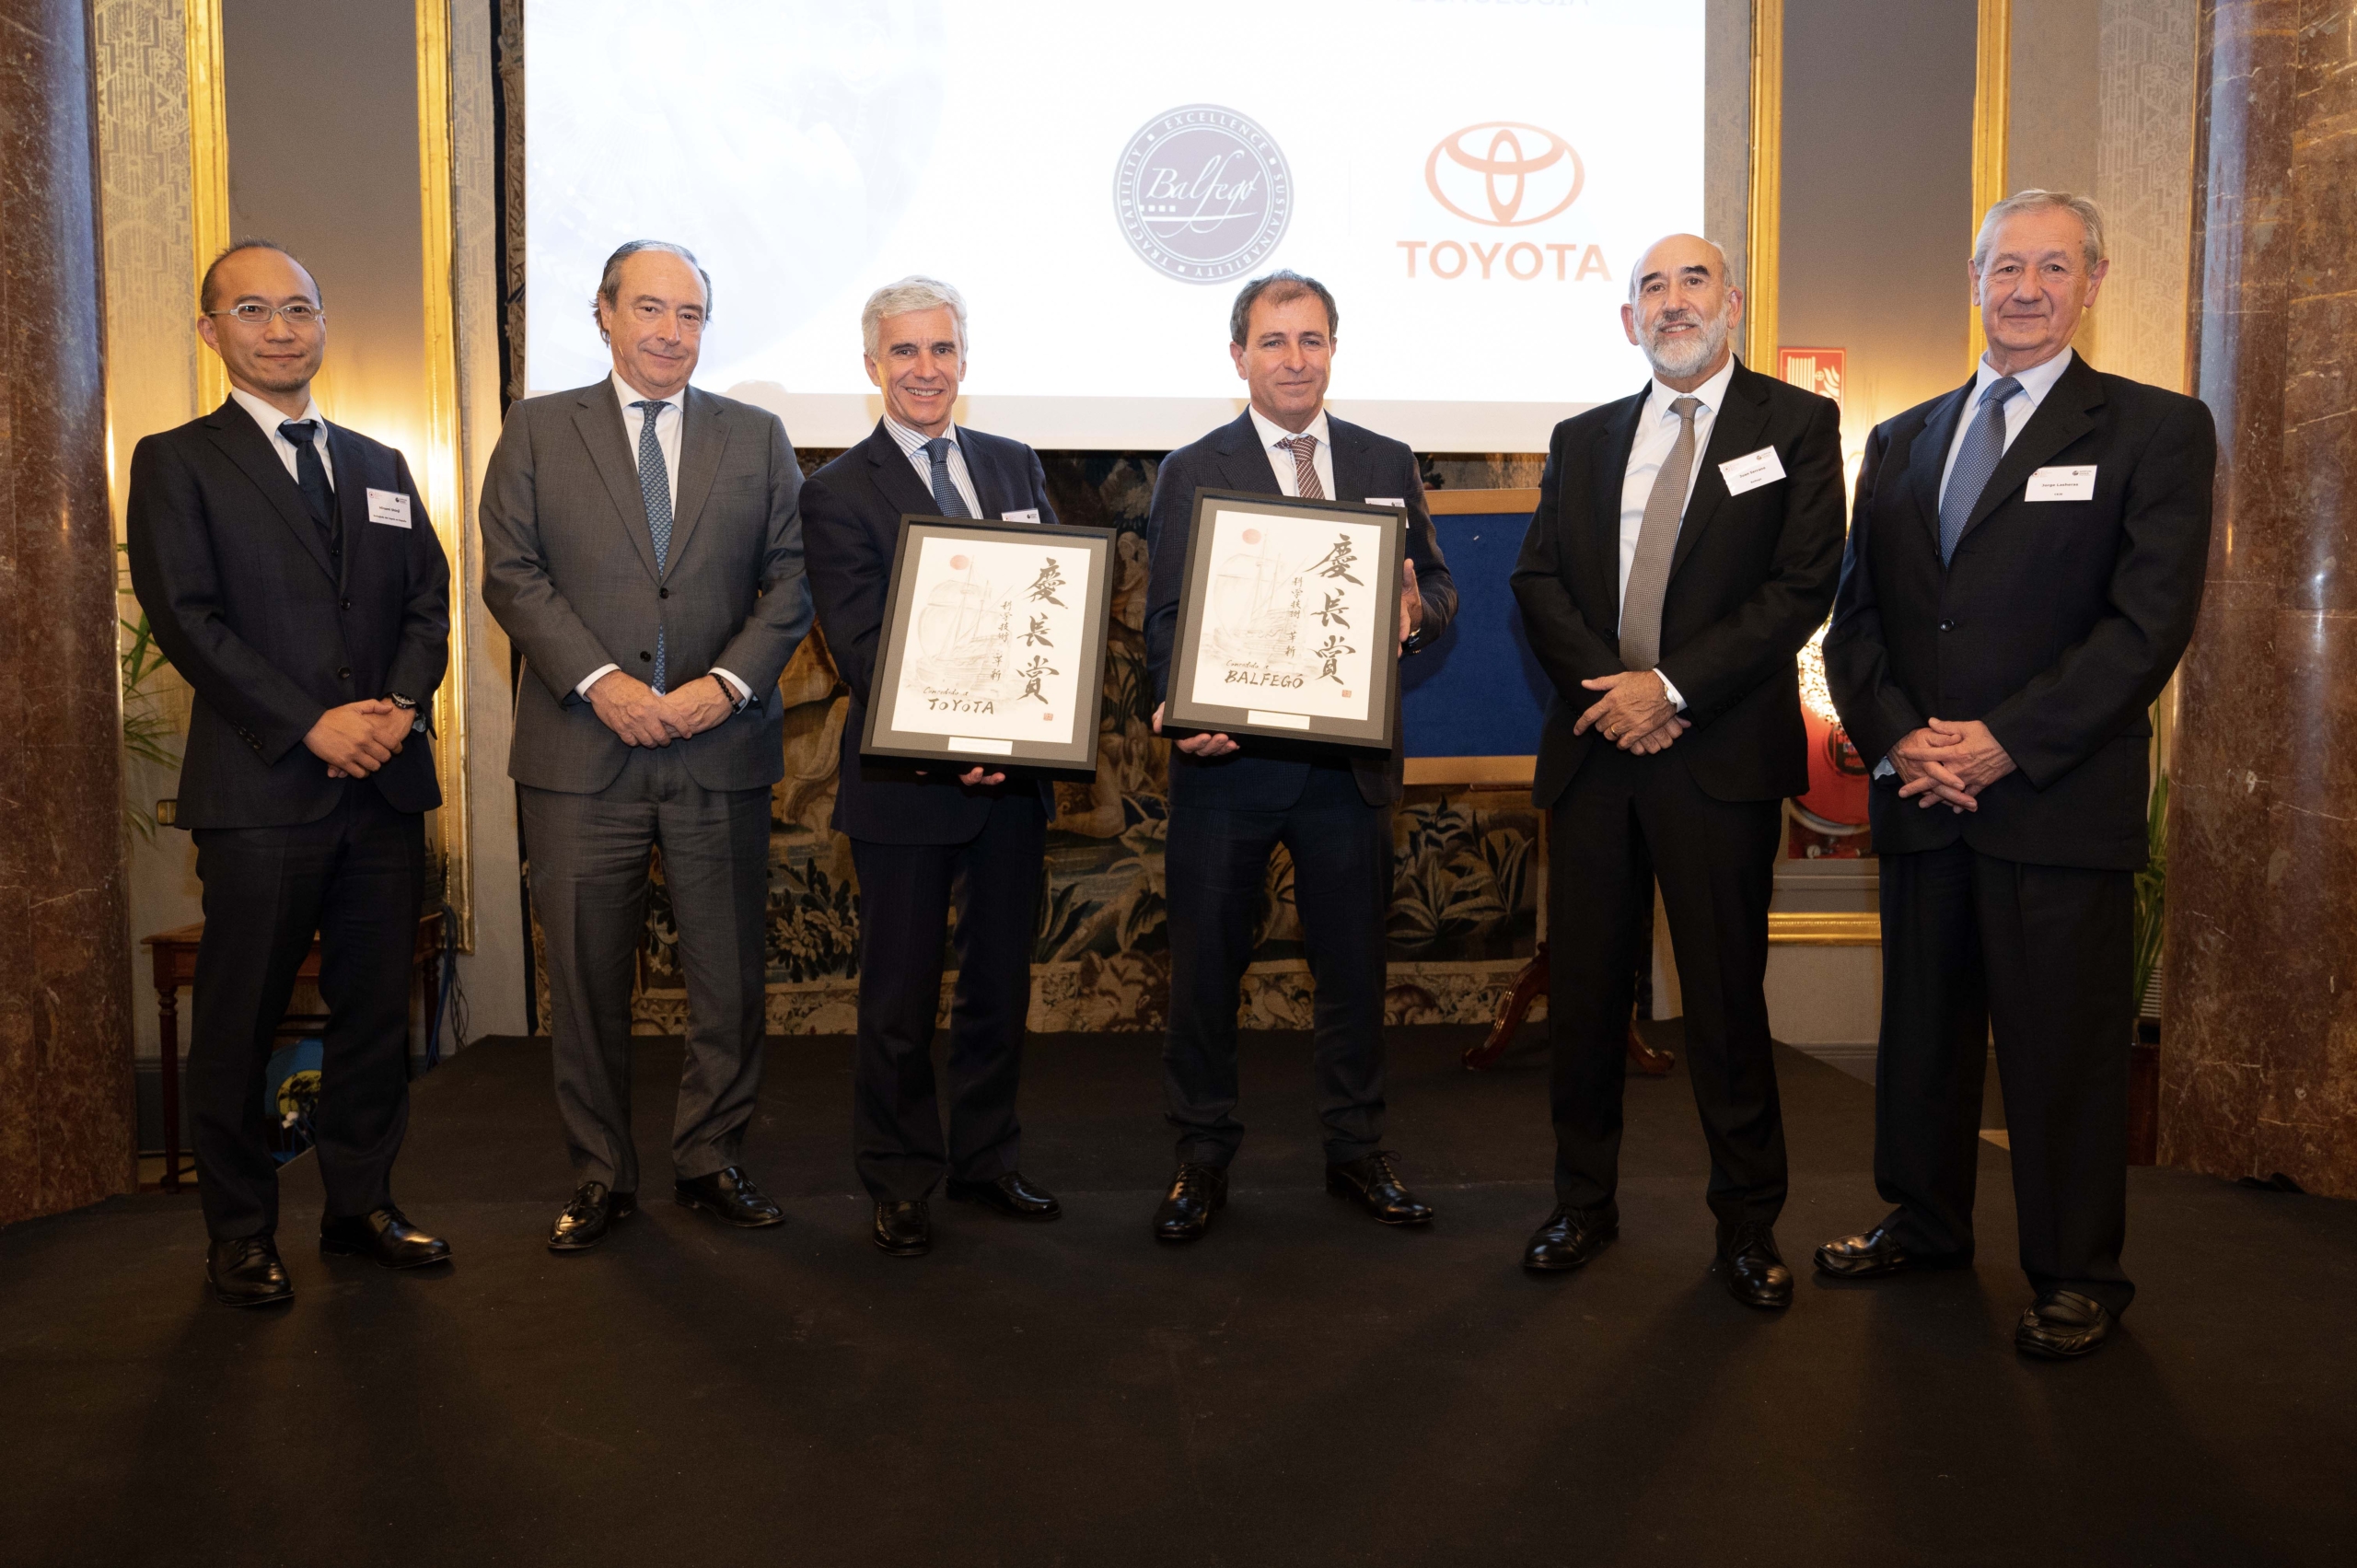 El Círculo Empresarial Japón-España premia a Balfegó y Toyota en sus VI Premios Keicho